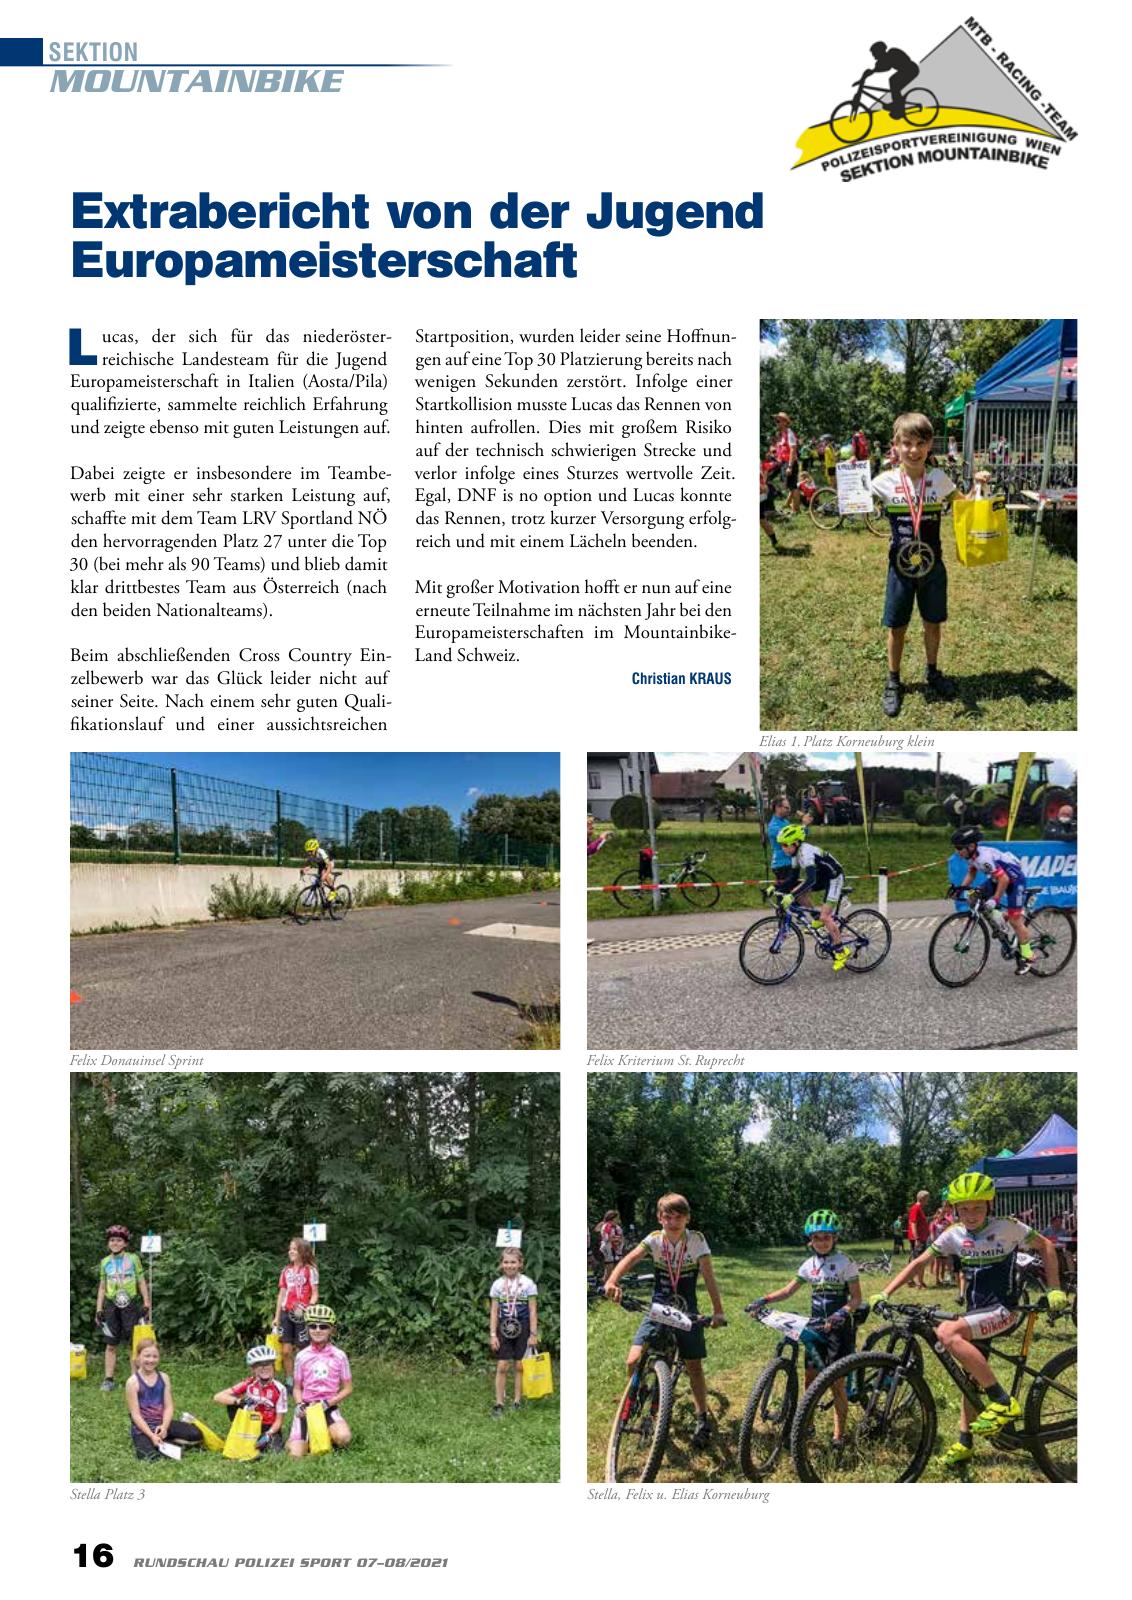 Vorschau Rundschau Polizei Sport 07-08/2021 Seite 16